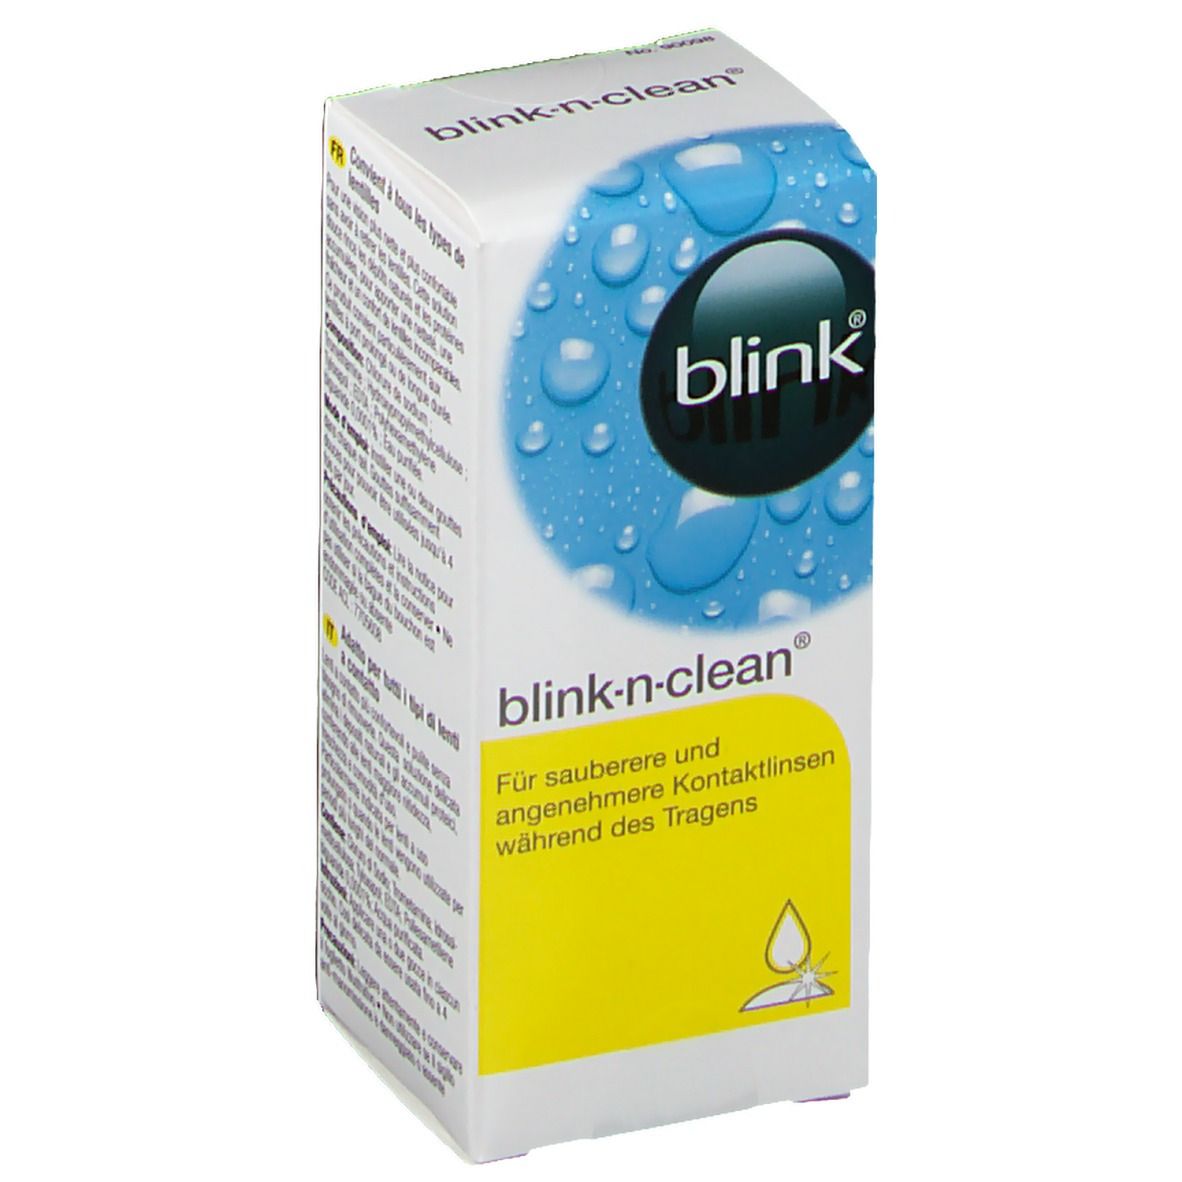 blink®-n-clean